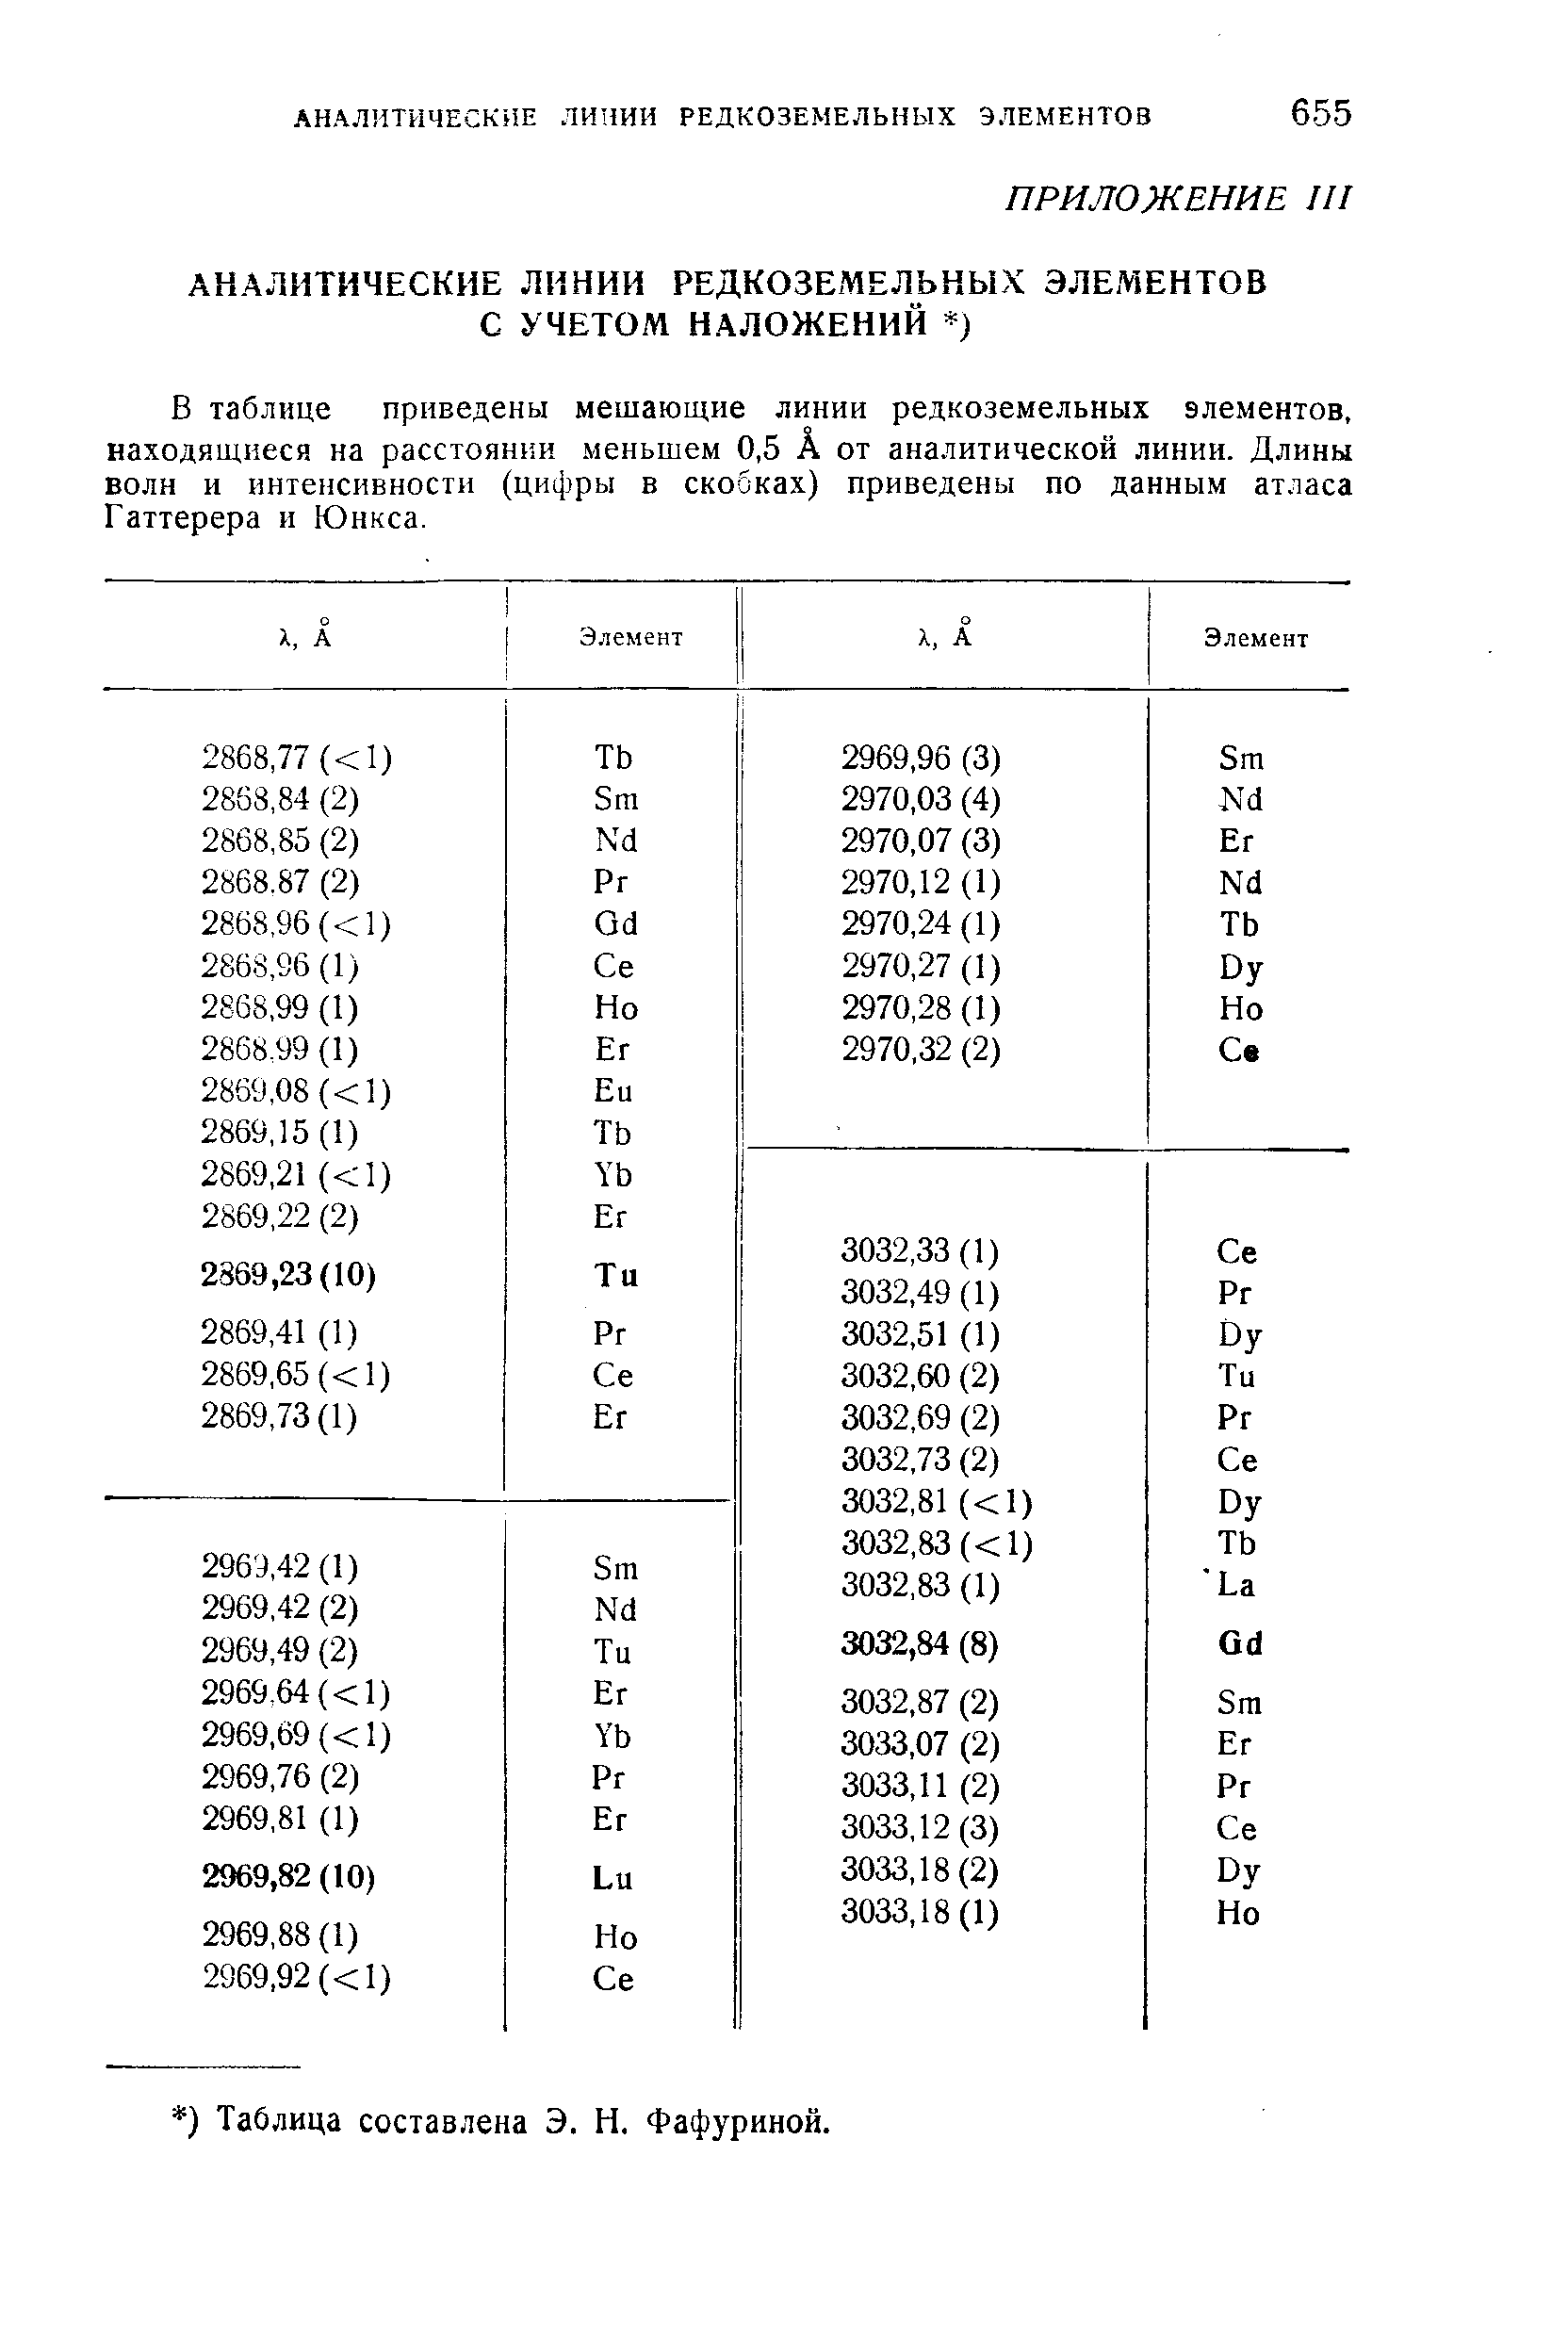 В таблице приведены мешающие линии редкоземельных элементов, находящиеся на расстоянии меньшем 0,5 А от аналитической линии. Длины волн и интенсивности (цифры в скобках) приведены по данным атласа Гаттерера и Юнкса.